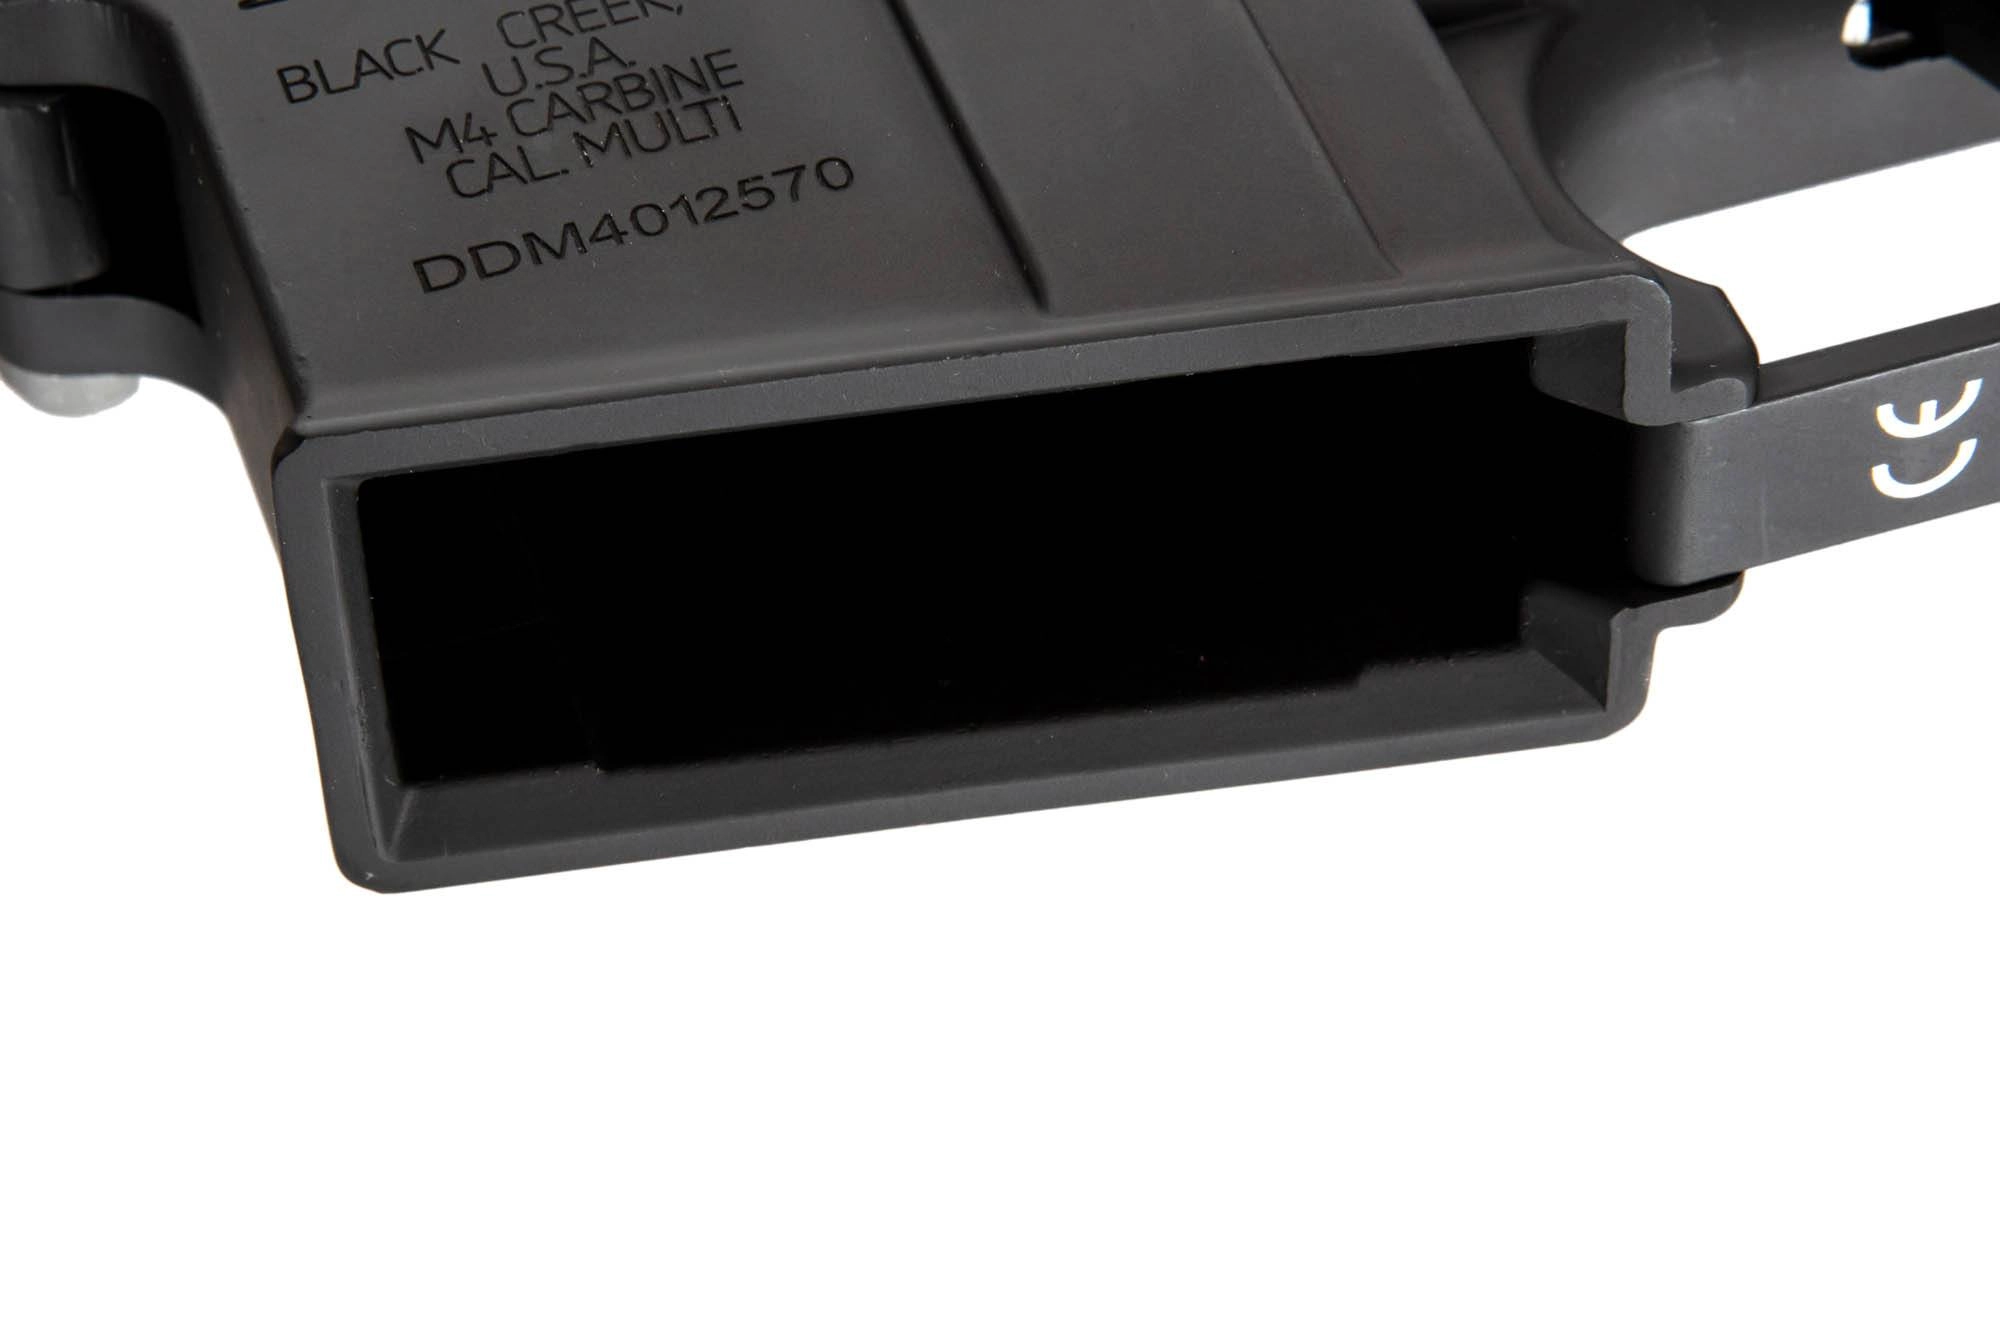 SPECNA ARMS AEG Rifle Edge 2.0 SA-E19 MK18 Daniel Defense